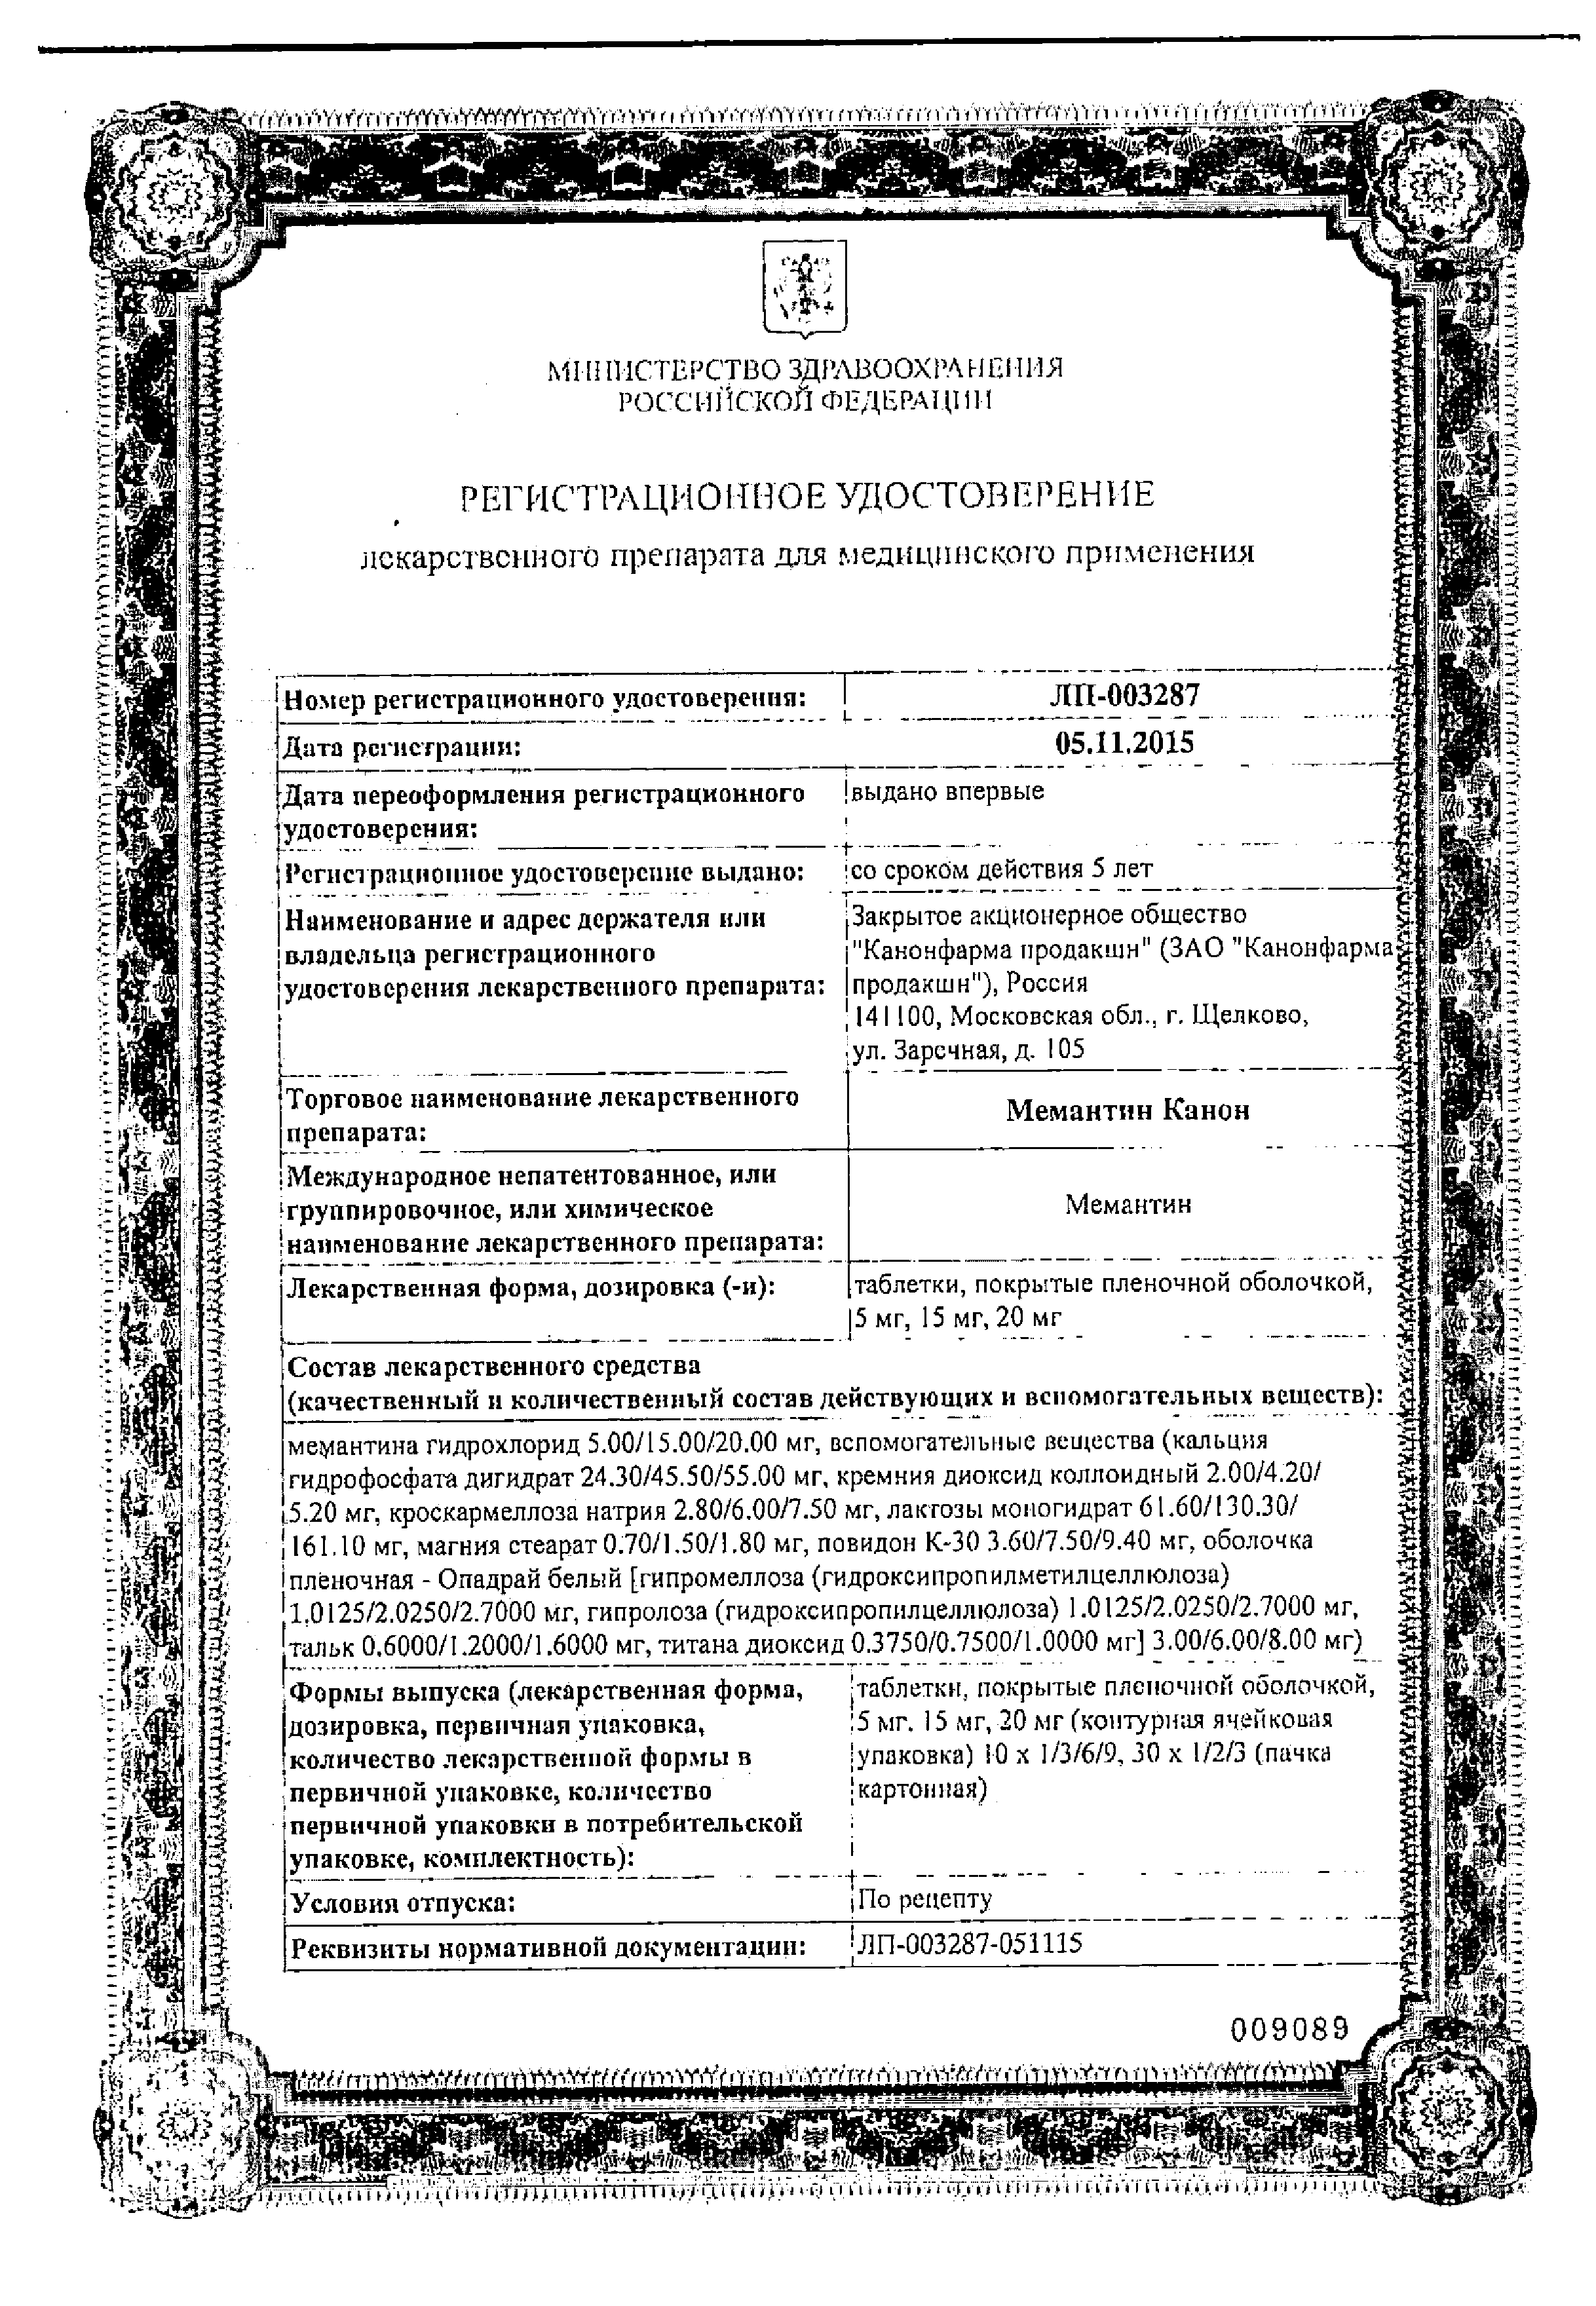 Мемантин Канон сертификат